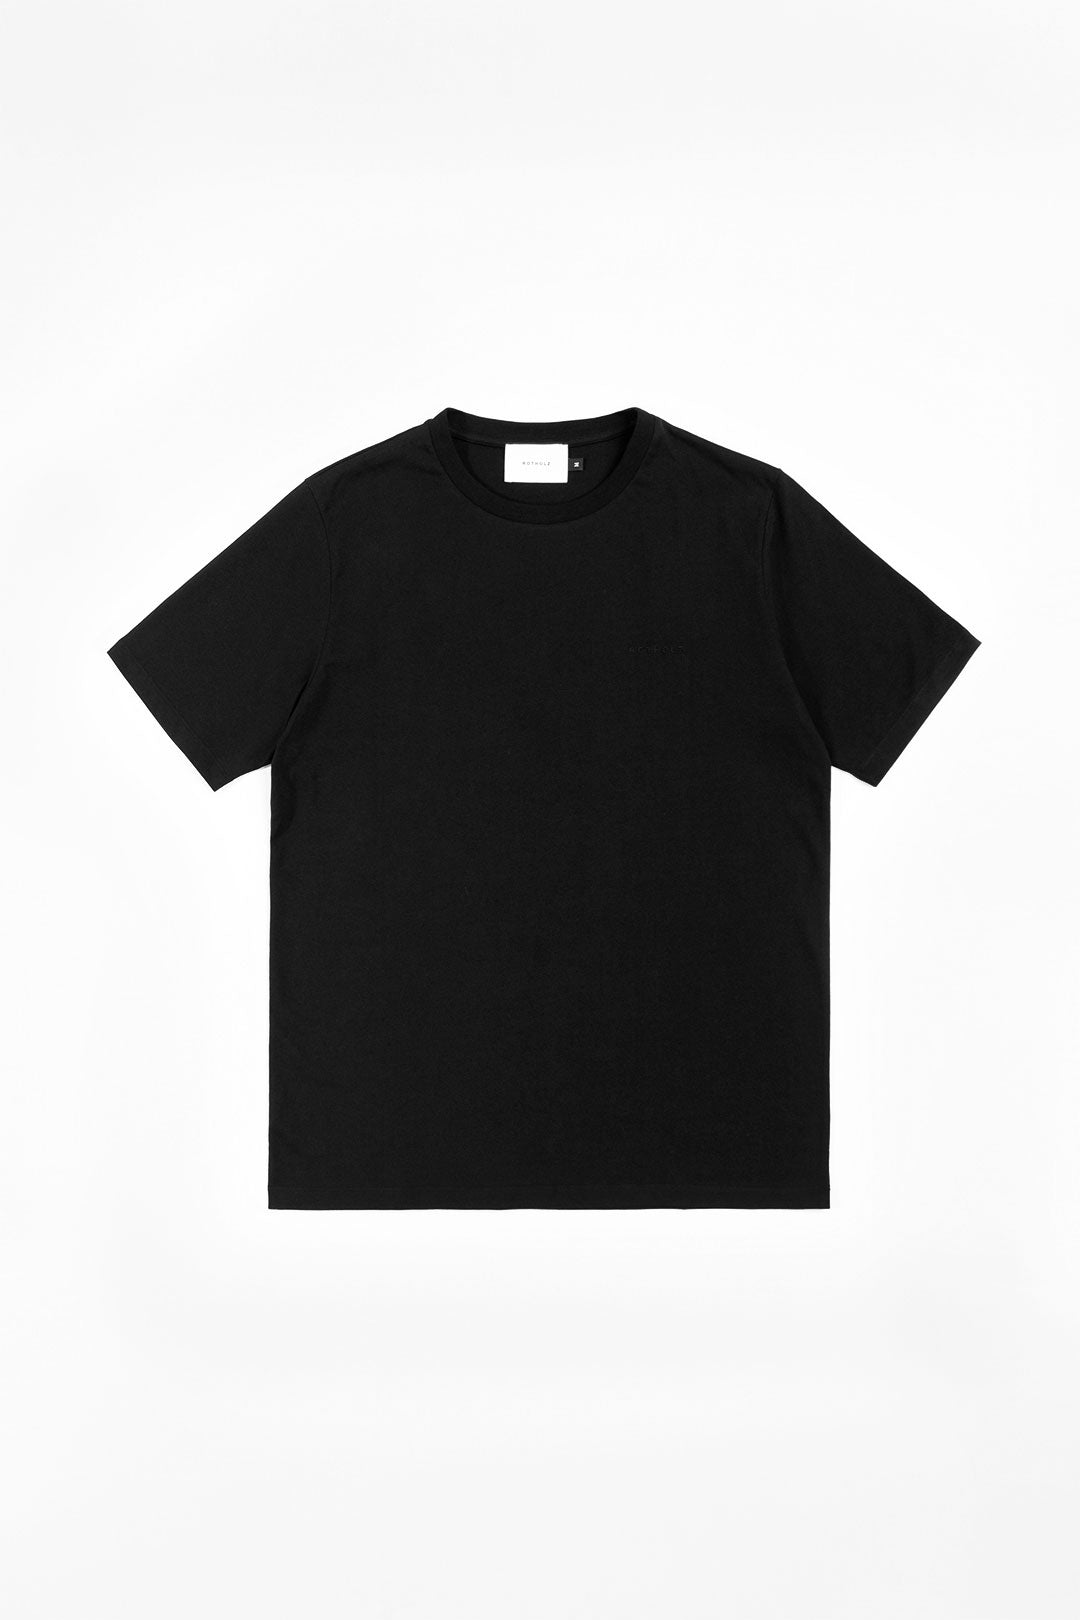 Schwarzes T-Shirt Logo aus 100% Bio-Baumwolle von Rotholz